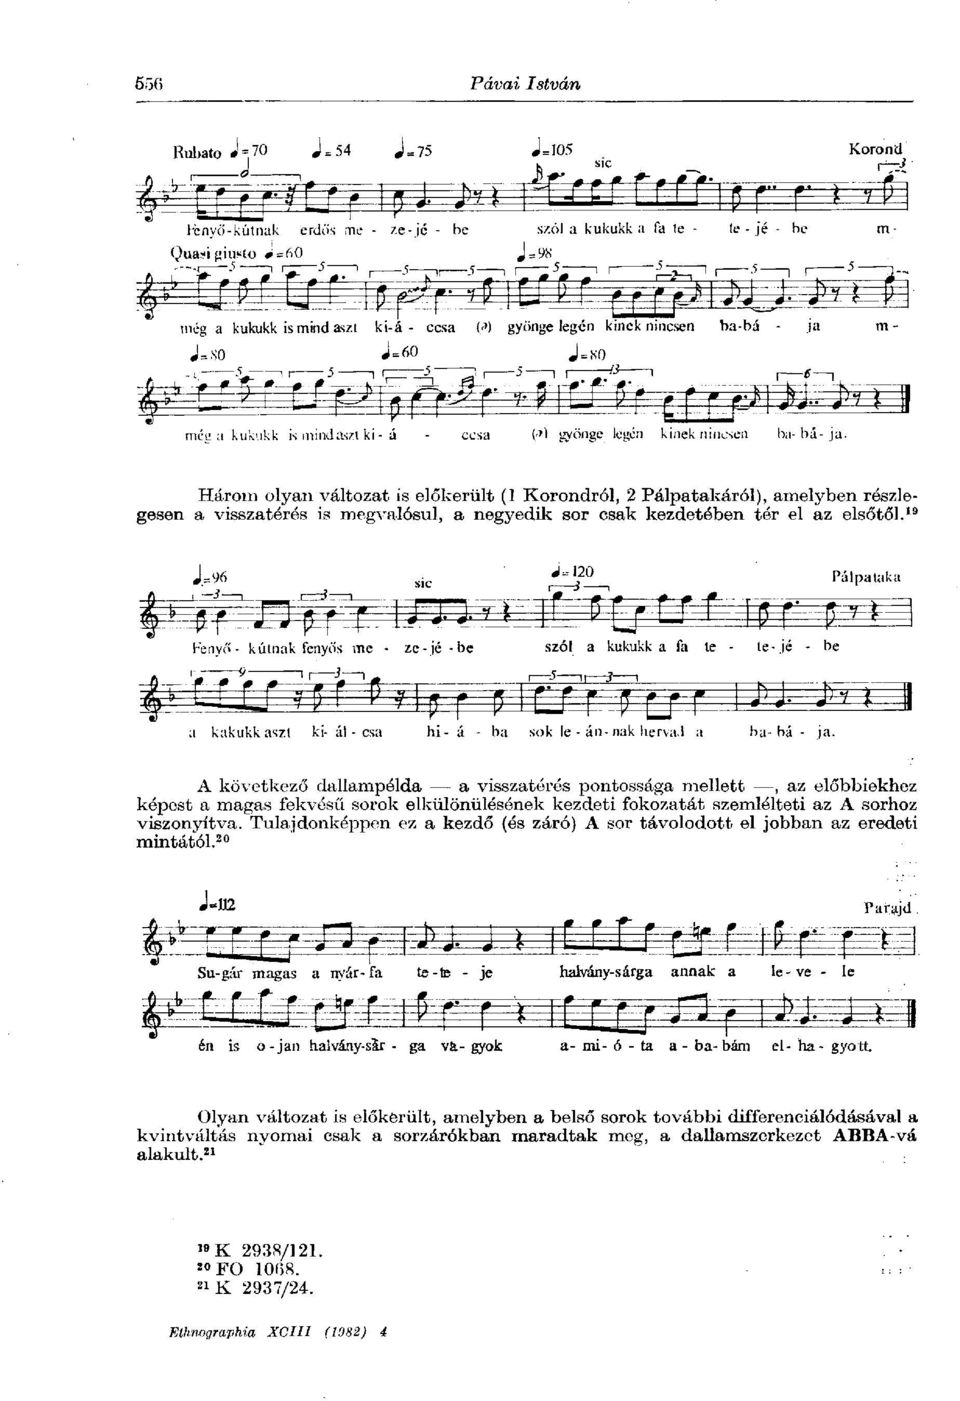 19 A következő dallampélda a visszatérés pontossága mellett, az előbbiekhez képest a magas fekvésű sorok elkülönülésének kezdeti fokozatát szemlélteti az A sorhoz